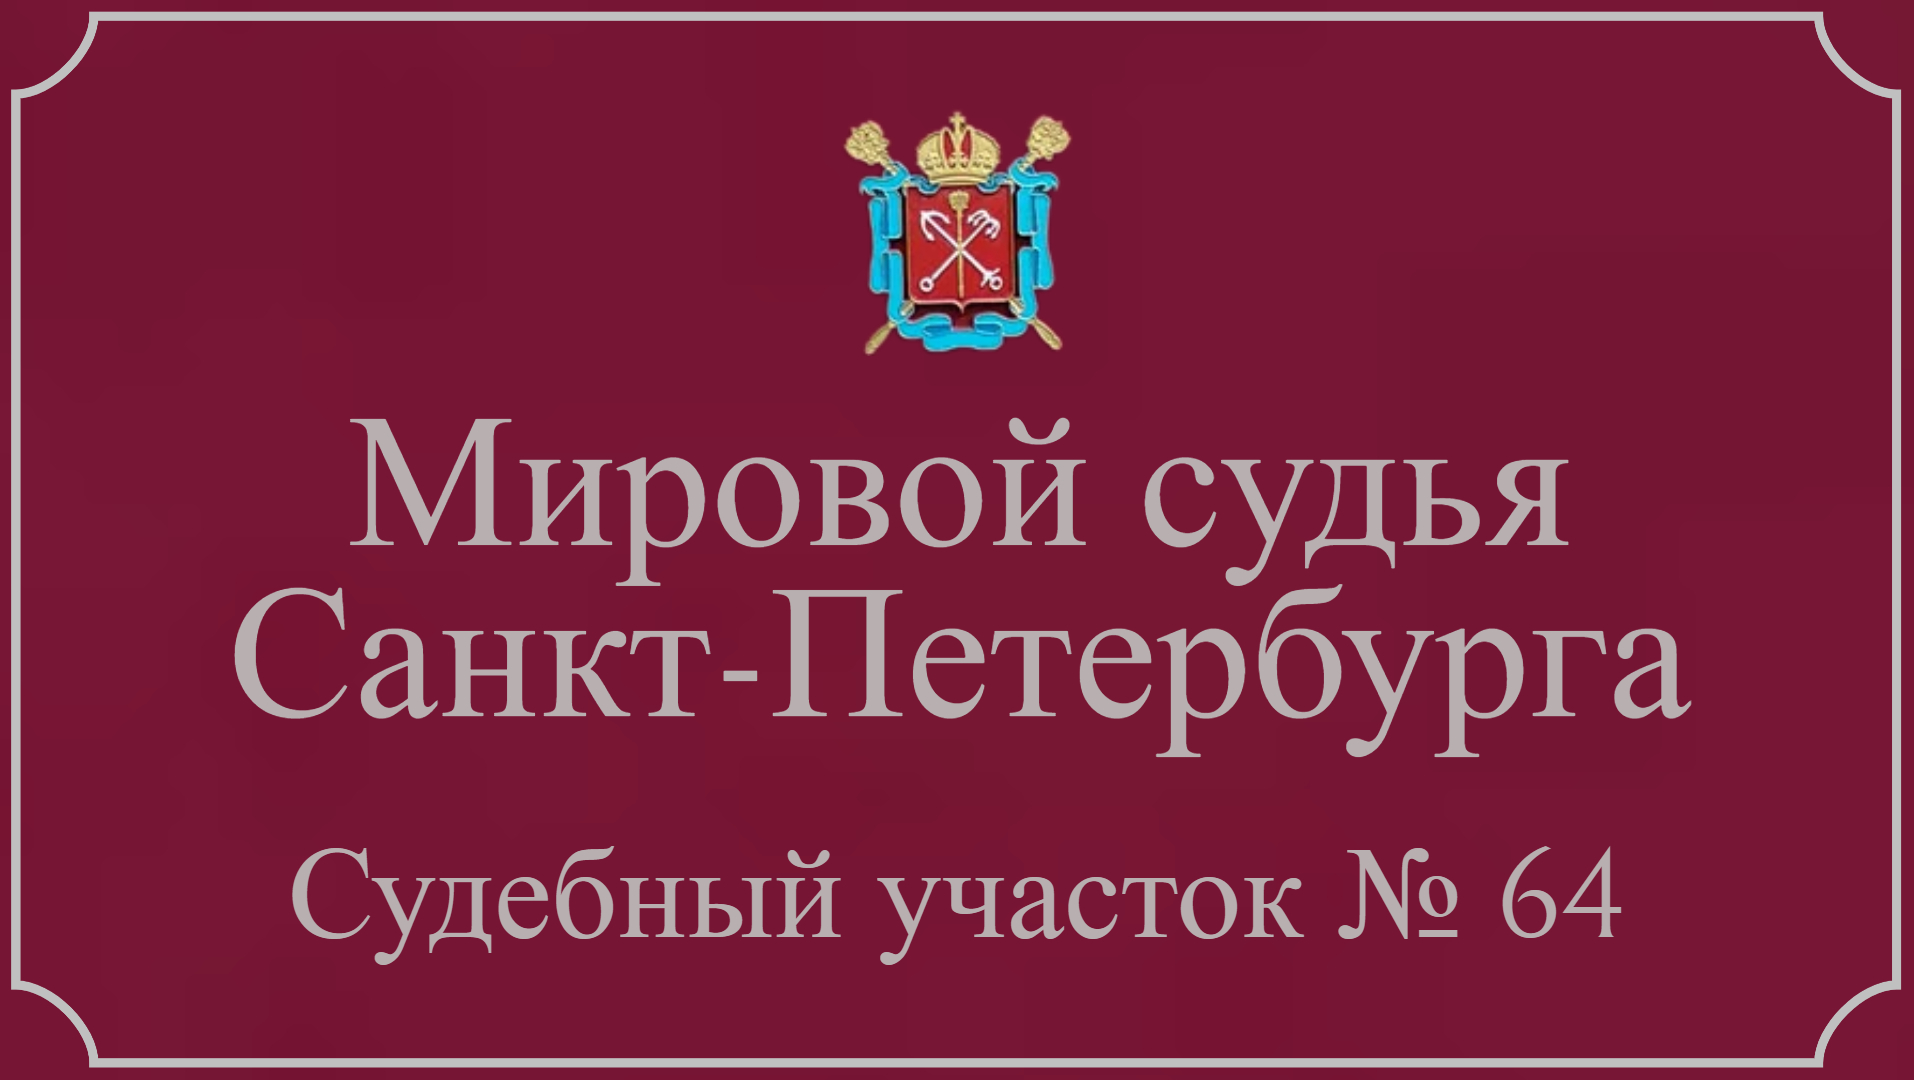 Информация по 64 судебному участку в Санкт-Петербурге.